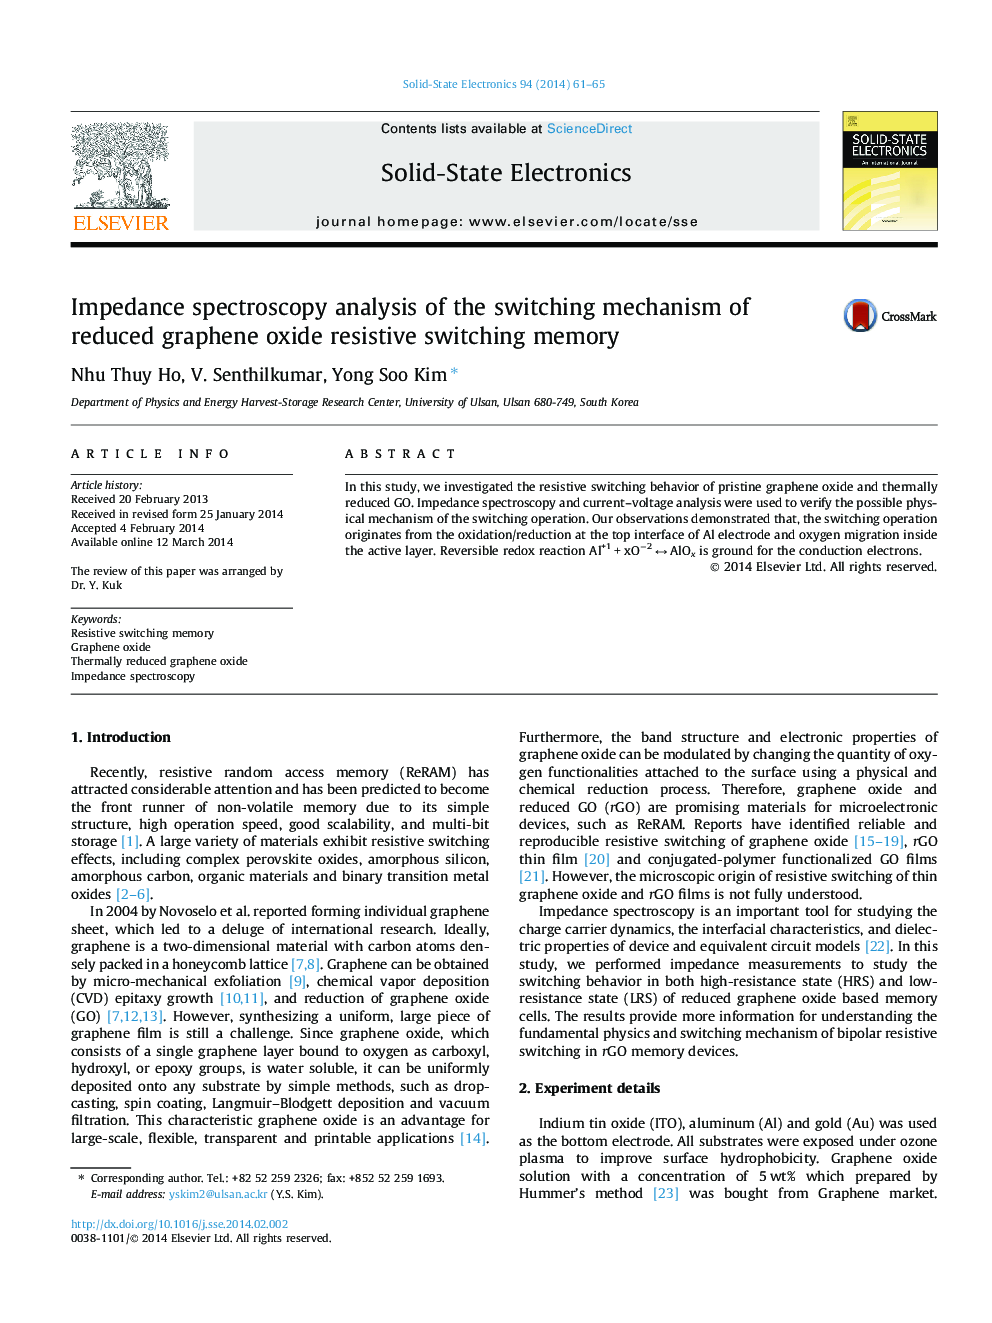 تجزیه و تحلیل طیف سنجی امپدانس از مکانیزم سوئیچینگ کاهش حافظه سوئیچینگ مقاومتی گرافین اکسید 